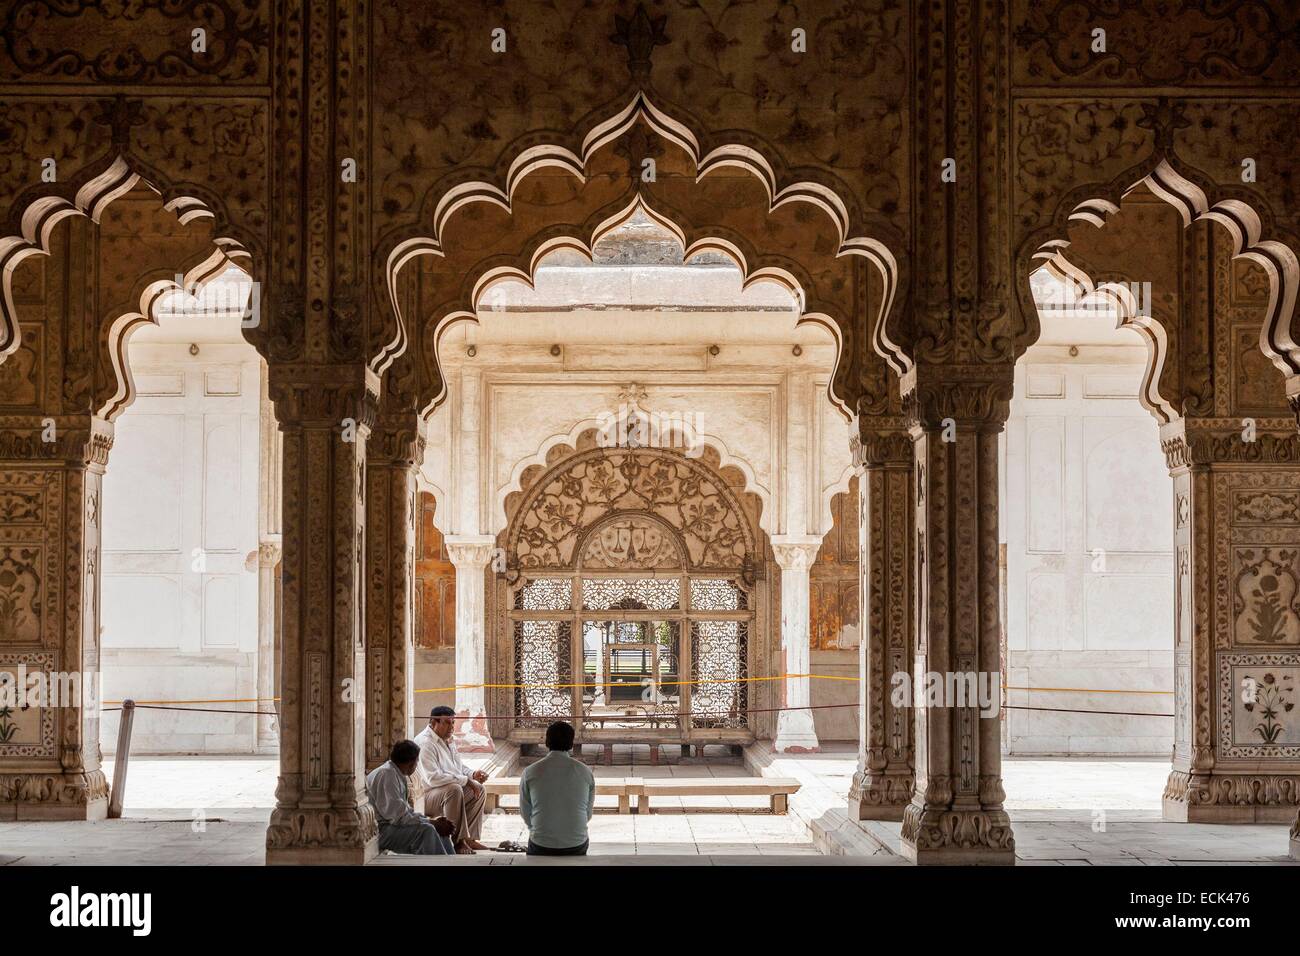 Indien, Neu-Delhi, Red Fort, das Palast-Fort von Shahjahanabad ist eine Festung des 17. Jahrhunderts Mogul-Architektur Weltkulturerbe der UNESCO, Diwan-i-Khas (Halle der privaten Publikum) weißen Marmor Stockfoto